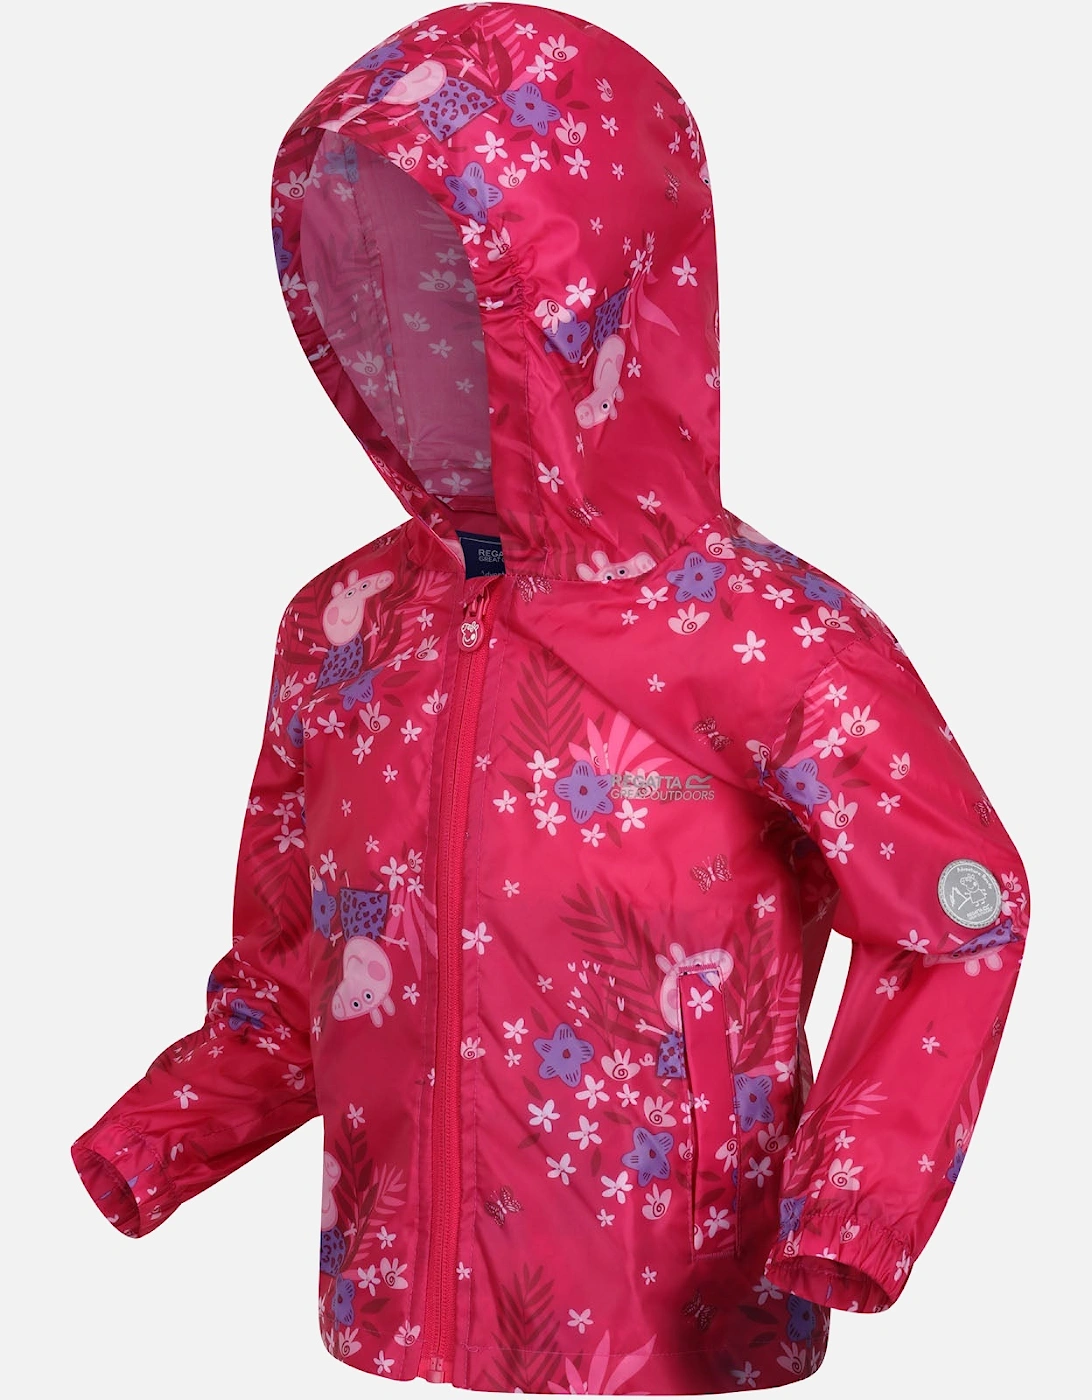 Kids Peppa Pig Waterproof Pack-It Zip Up Jacket, 6 of 5